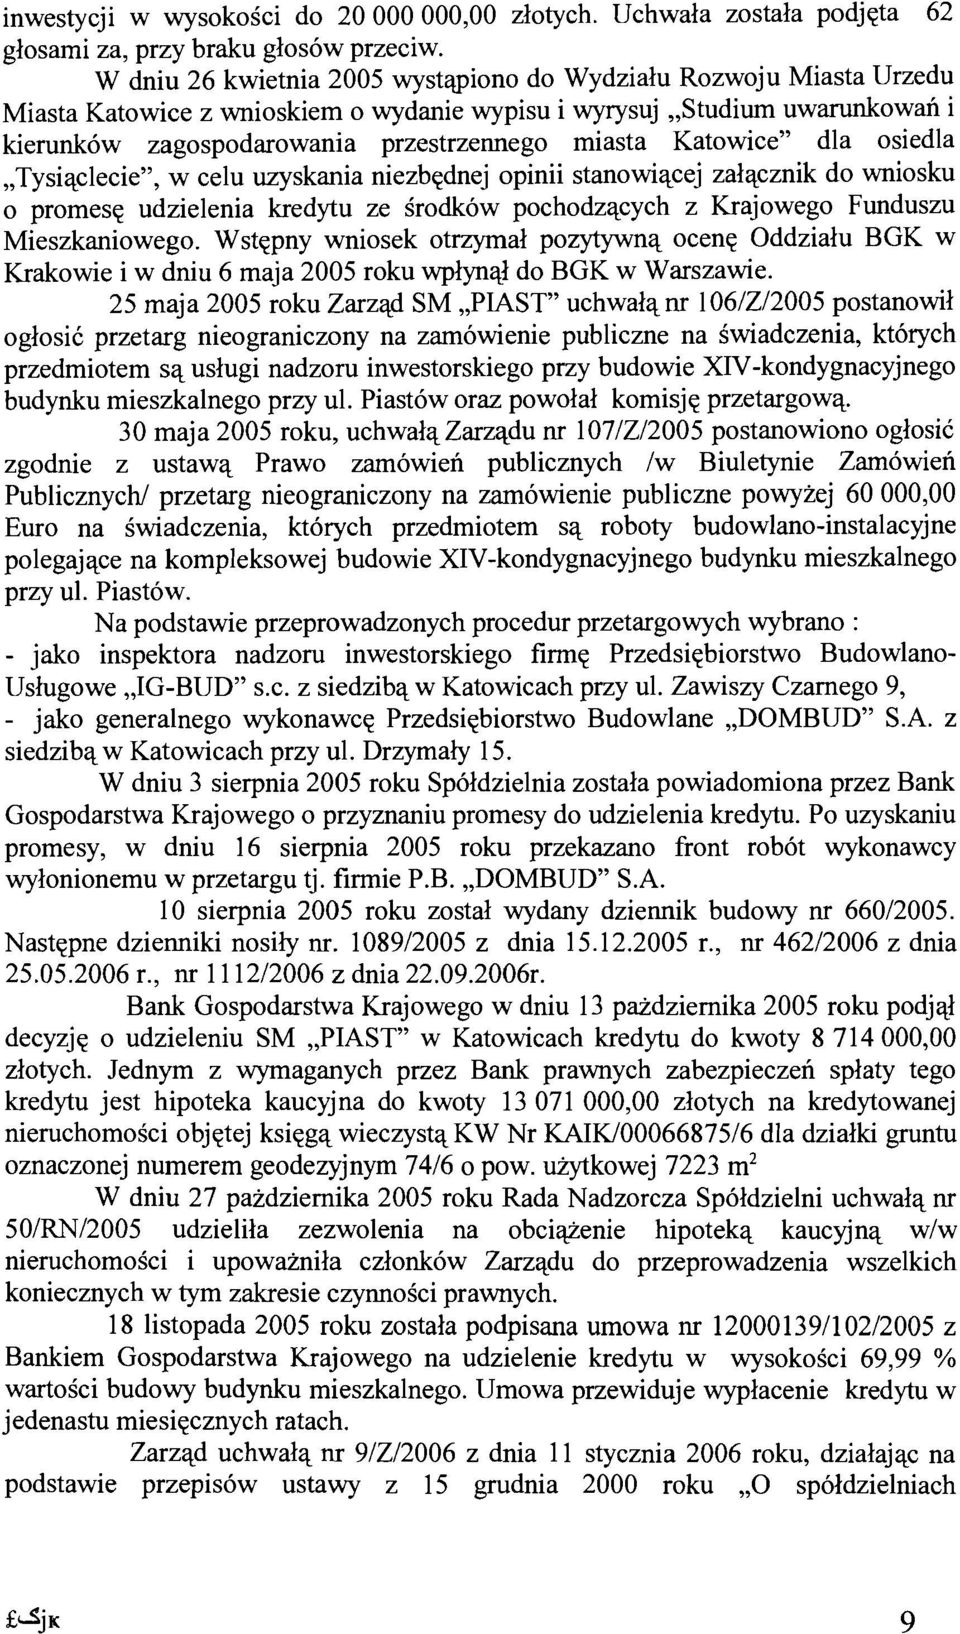 Katowice" dla osiedla "Tysi'l.clecie", w celu uzyskania niezbednej opinii stanowiacej zalacznik do wniosku o promese udzielenia kredytu ze srodkow pochodzacych z Krajowego Funduszu Mieszkaniowego.